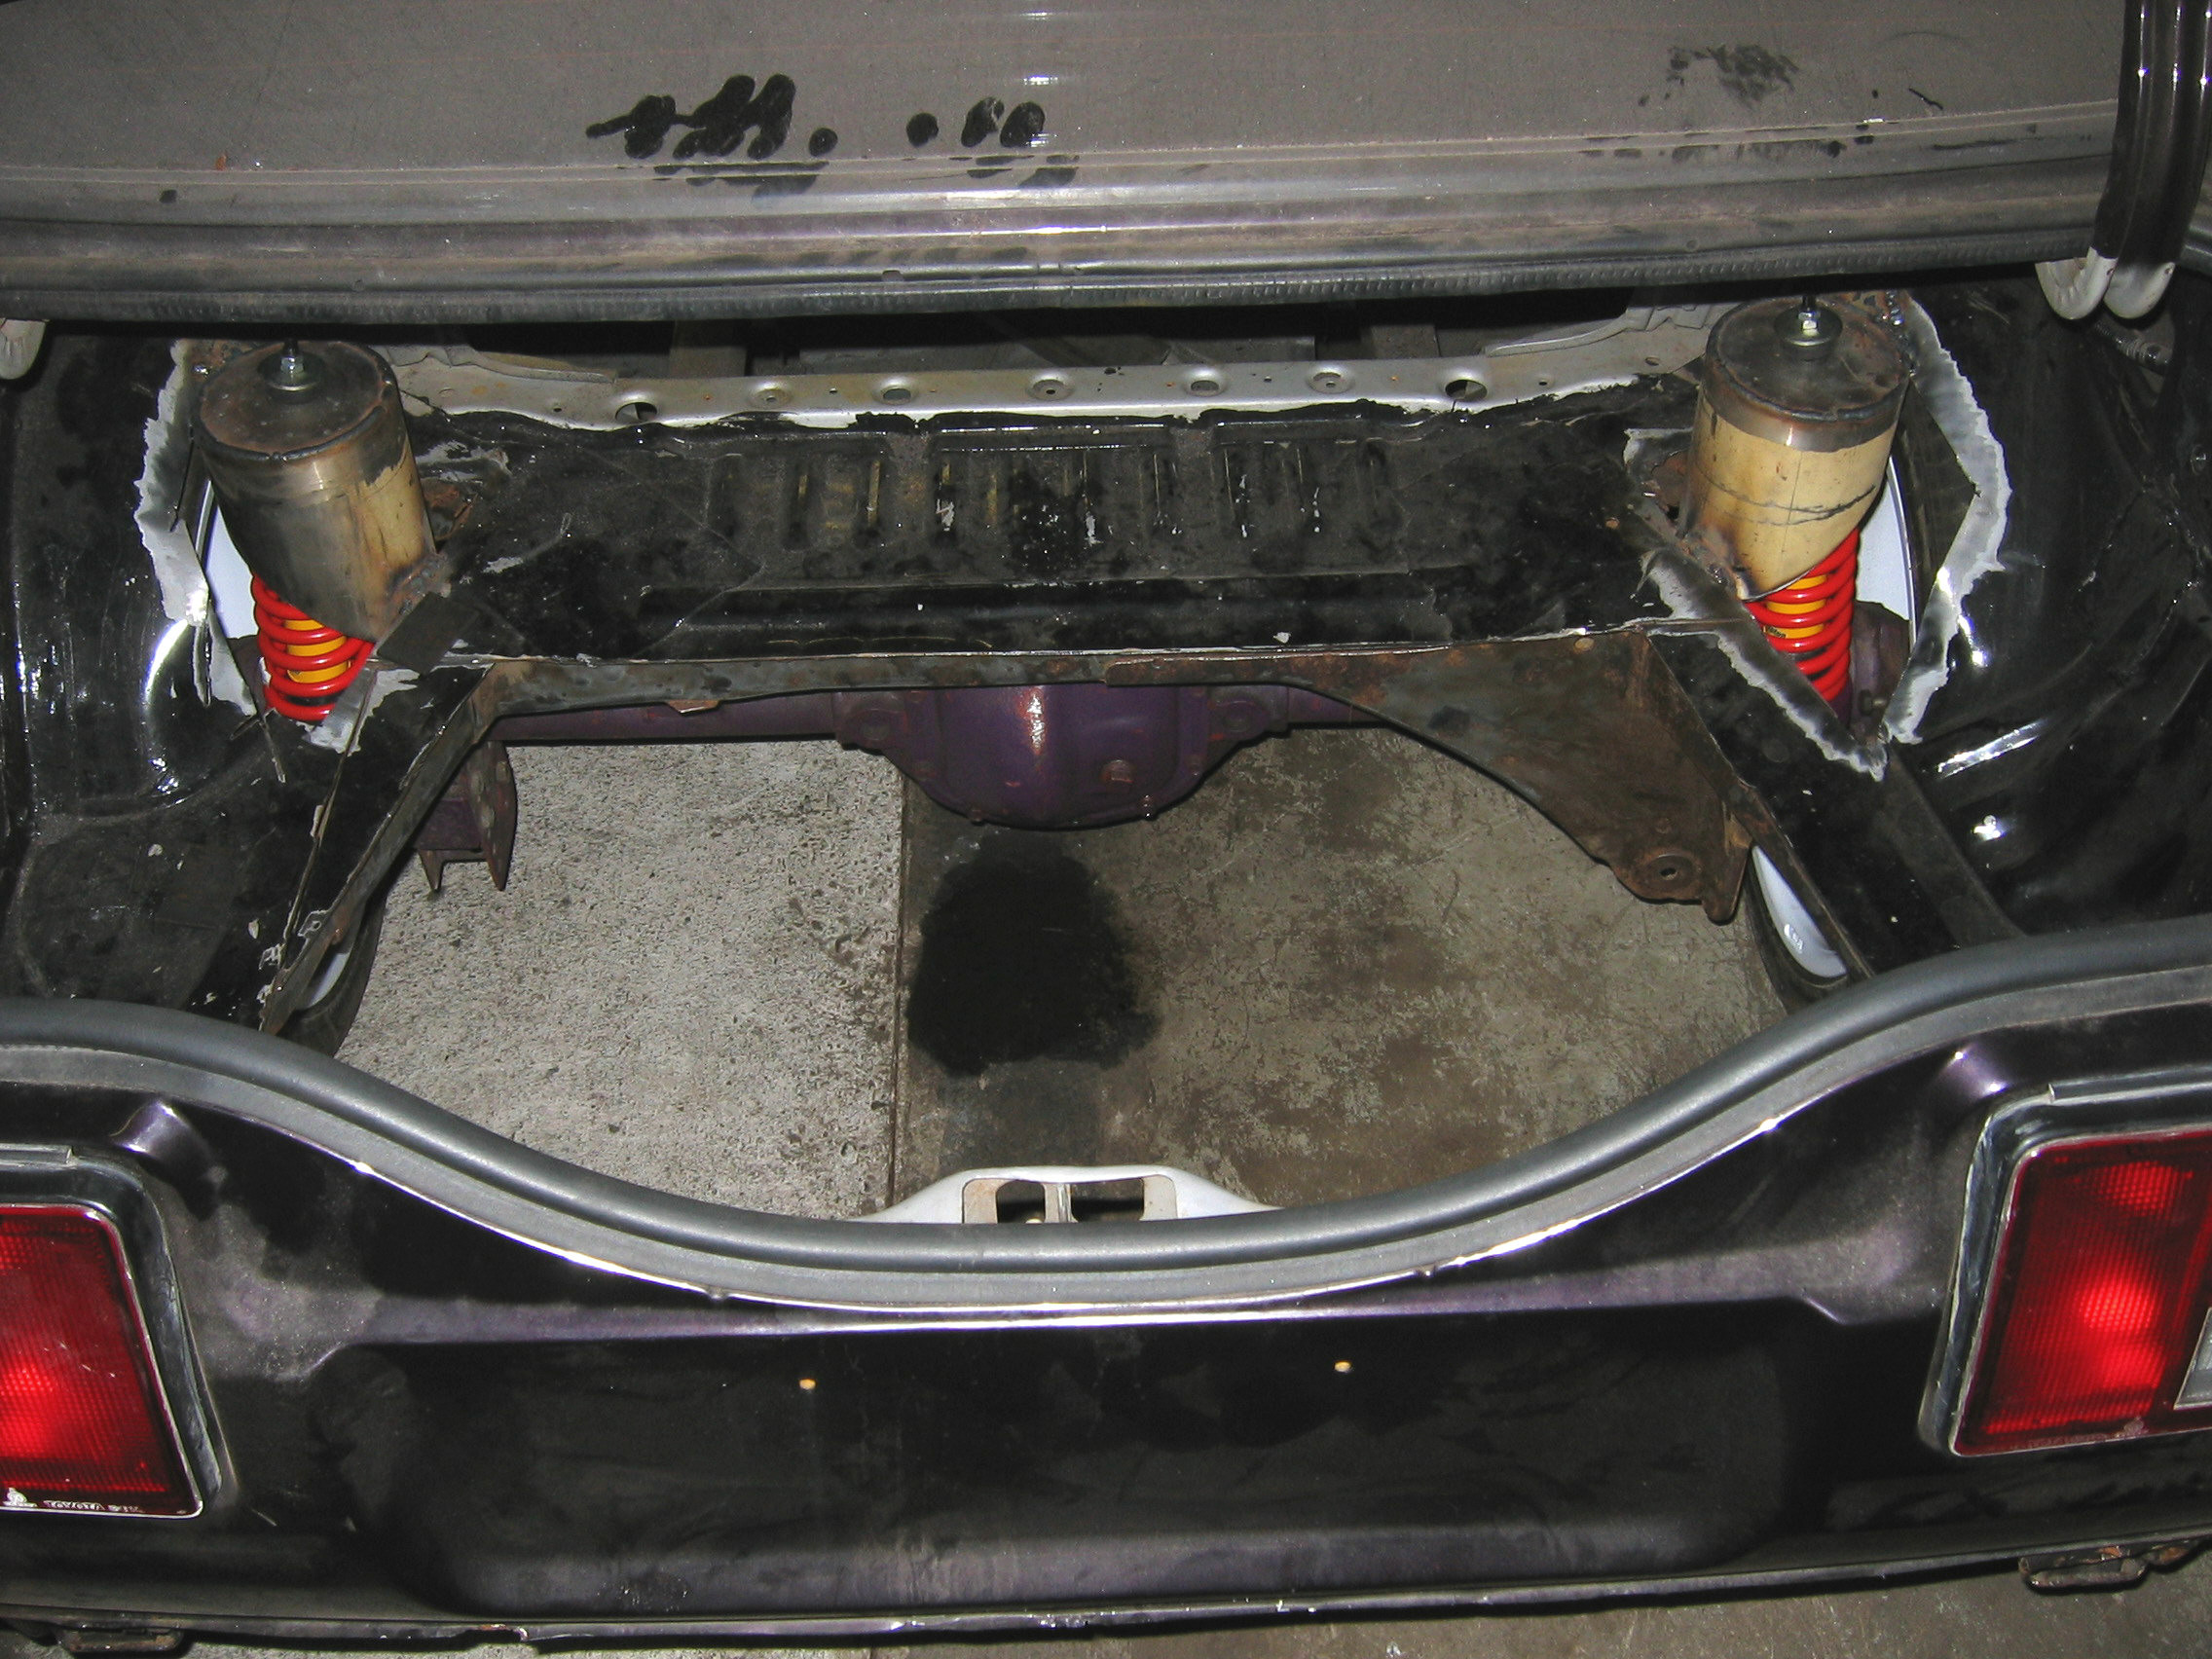 Toyota Corolla GT AE86 Turbo projekti, Takakontissa on viela tilaa